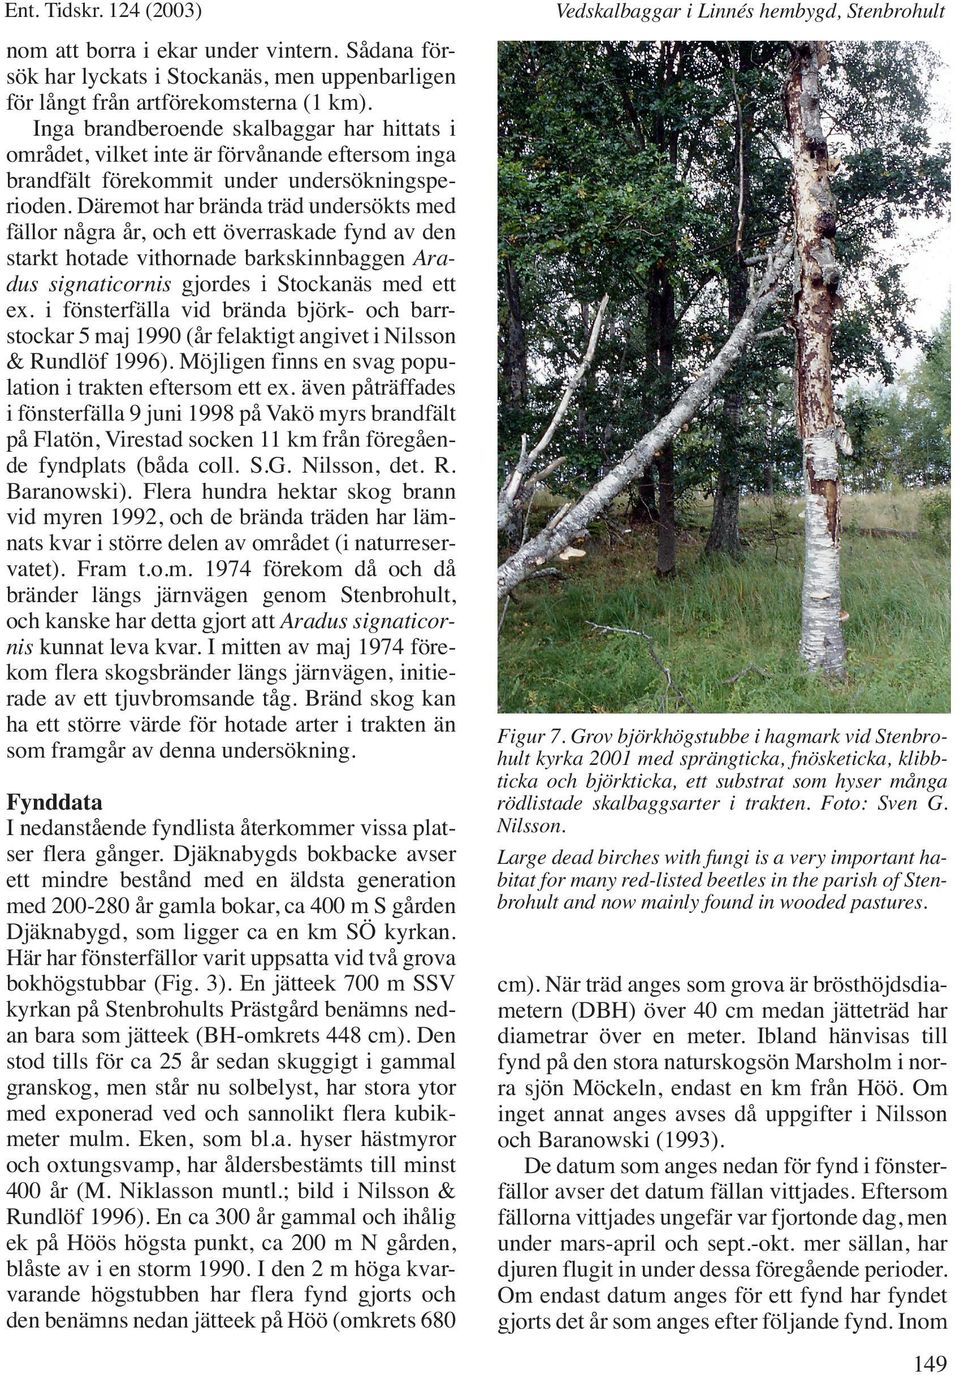 Däremot har brända träd undersökts med fällor några år, och ett överraskade fynd av den starkt hotade vithornade barkskinnbaggen Aradus signaticornis gjordes i Stockanäs med ett ex.